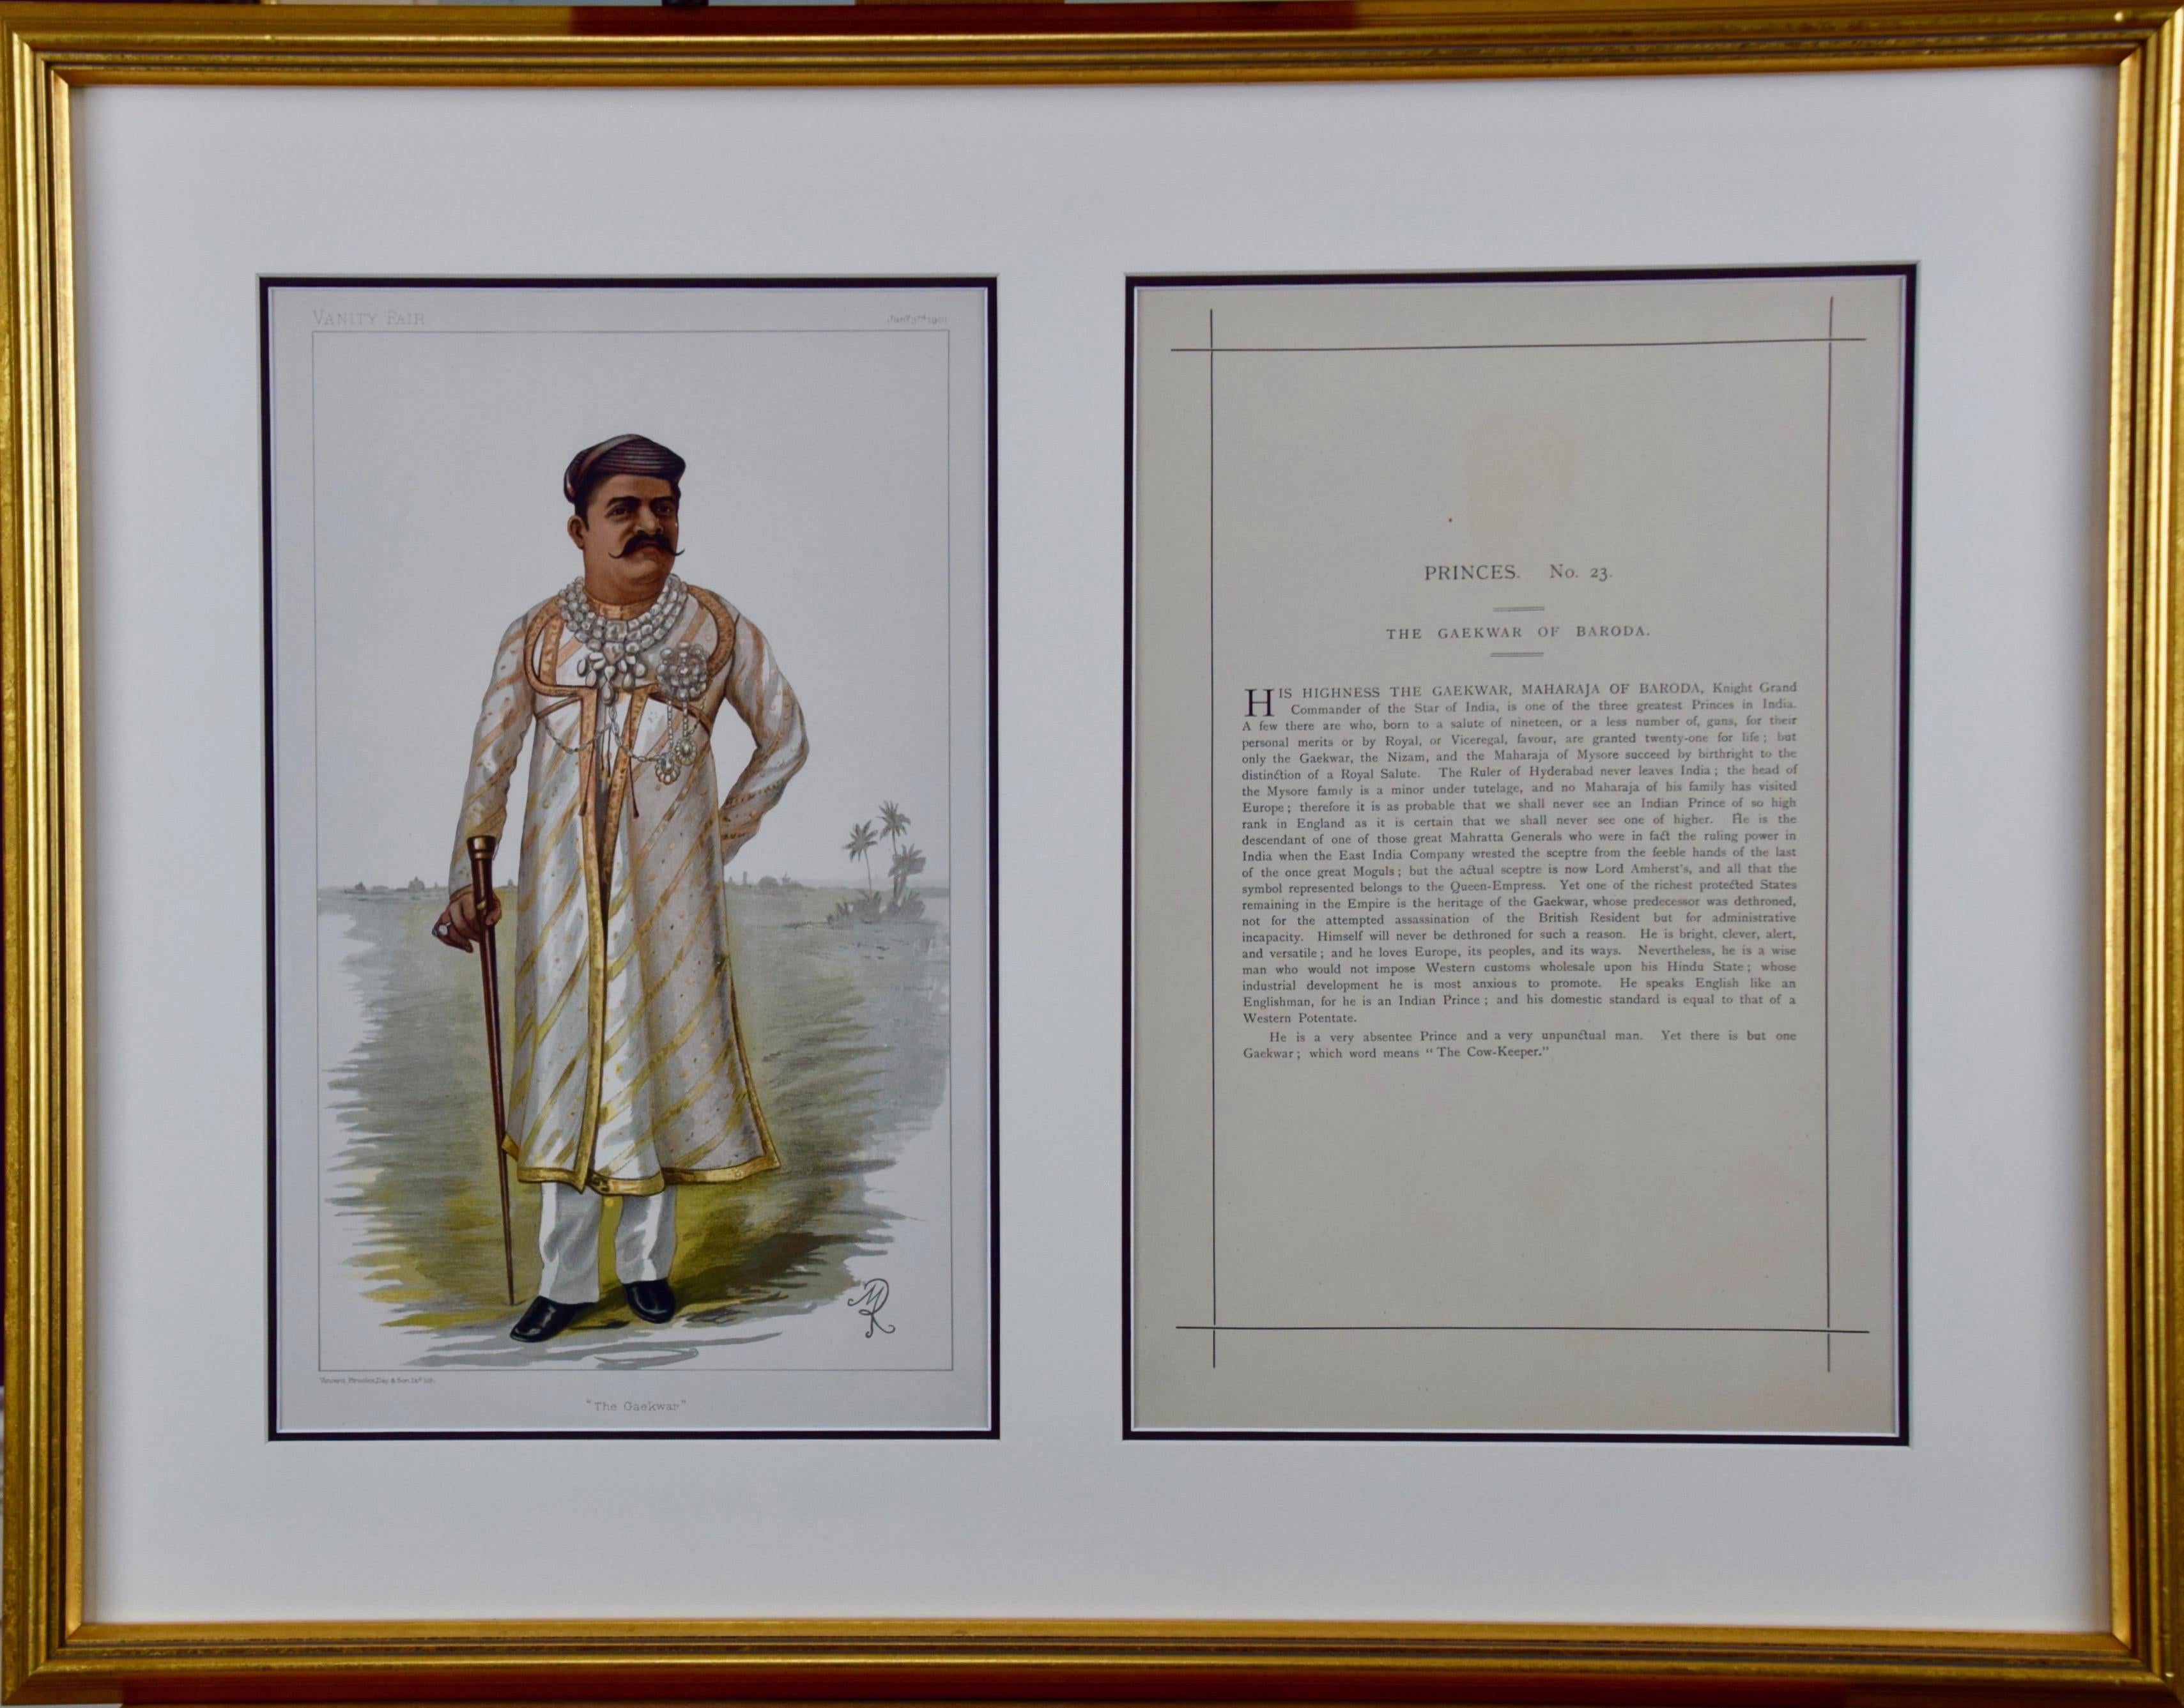 Colored Vanity Fair Caricature of the "Gaekwar of Baroda" (Prince of India)  